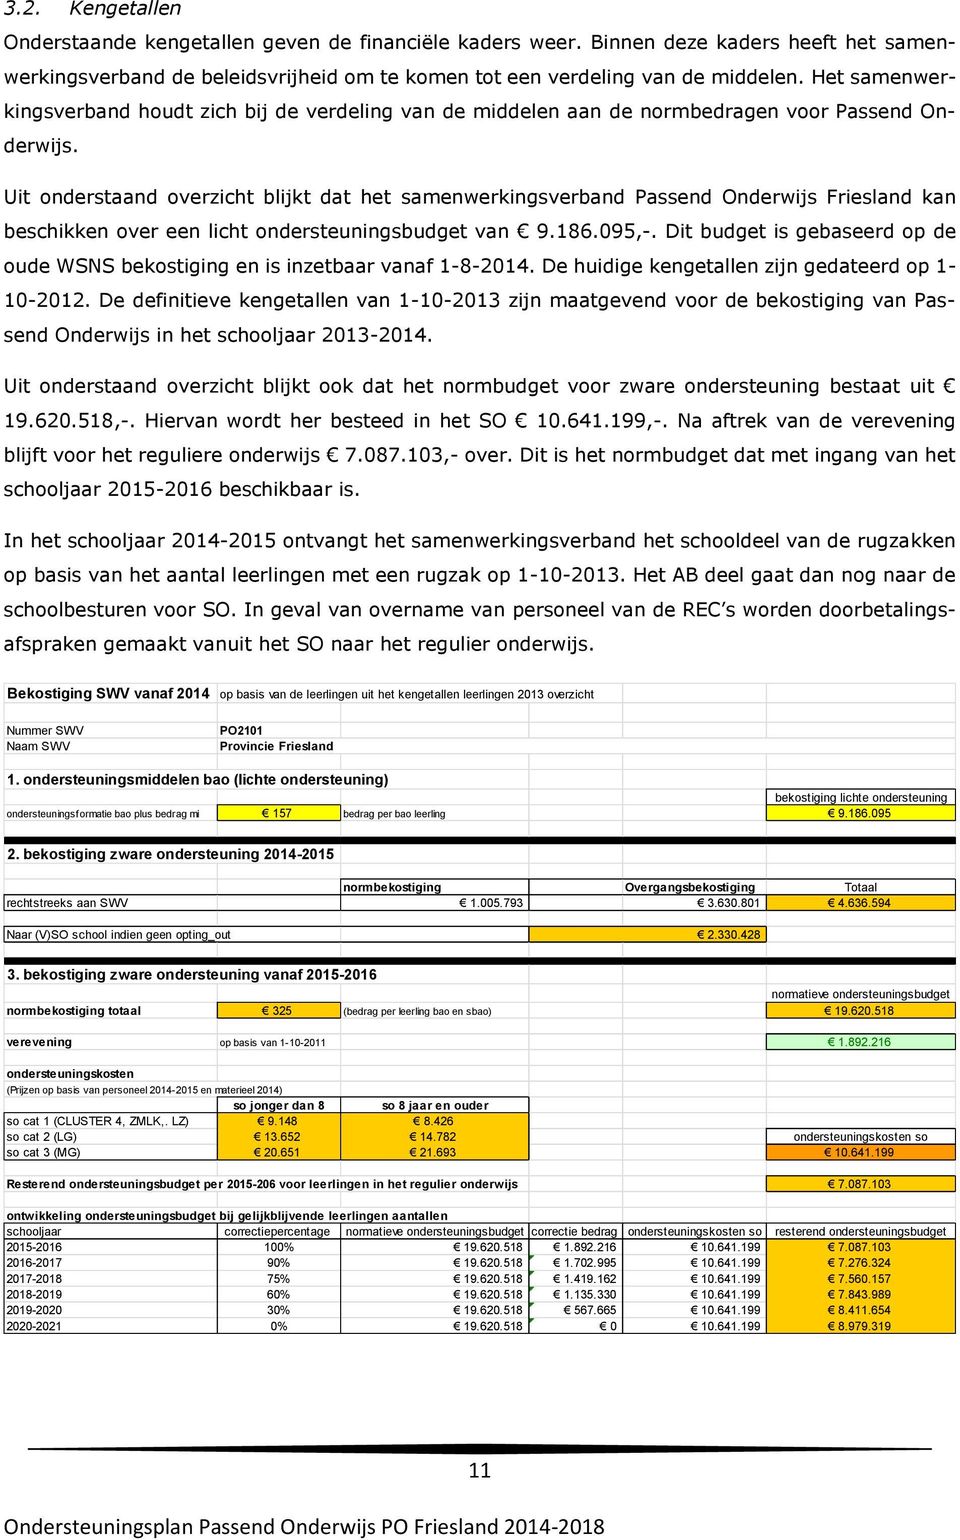 Uit onderstaand overzicht blijkt dat het samenwerkingsverband Passend Onderwijs Friesland kan beschikken over een licht ondersteuningsbudget van 9.186.095,-.